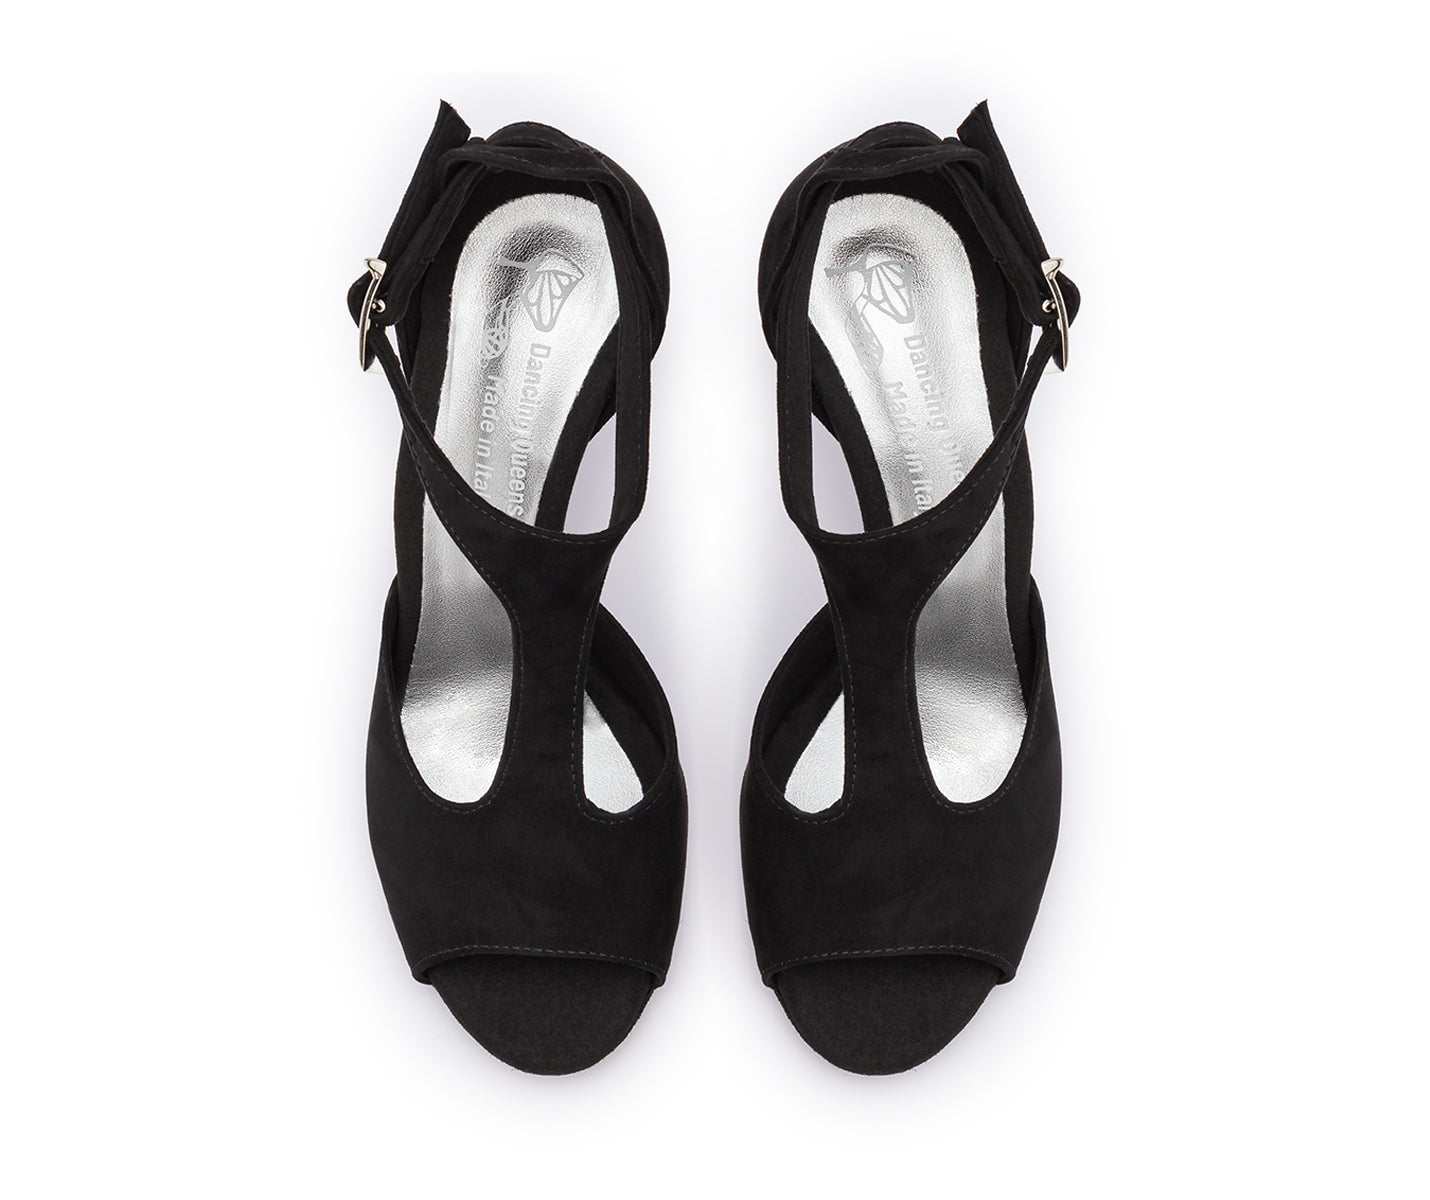 DQ1001 Chaussures de danse en noir avec semelle en daim